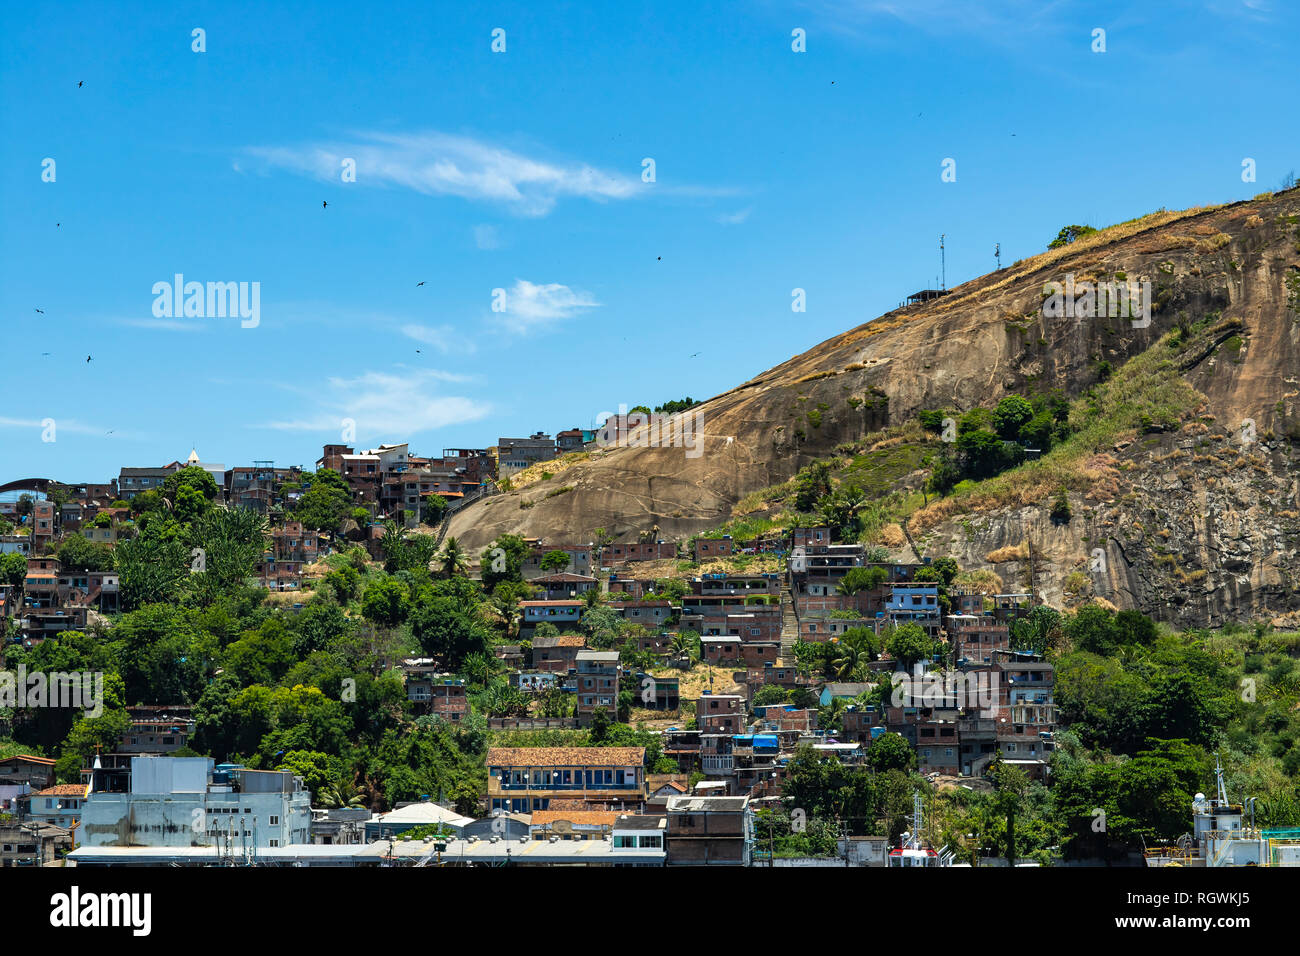 Slums der Welt. Favelas von Brasilien. Slum in der Stadt Niteroi, Penha Hill Slum. Stockfoto